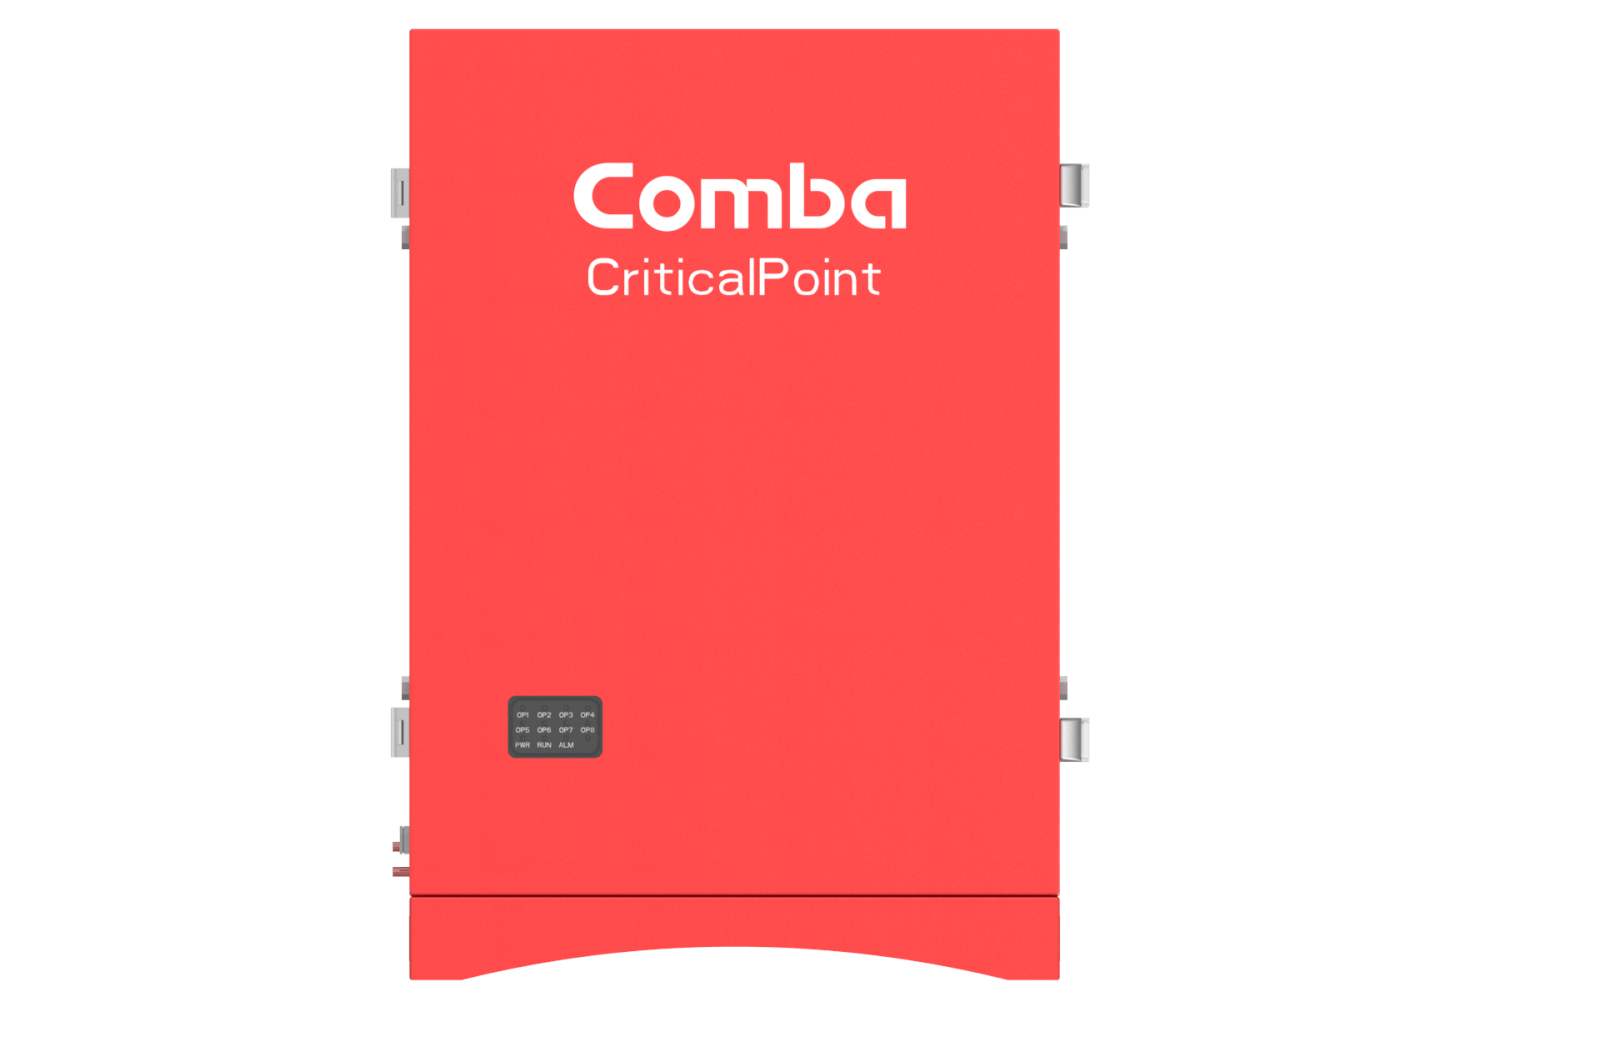 Original Image: Comba – CriticalPoint Class A Fiber DAS MU Dual Band 700/800MHz, 1 to 8 x RUs